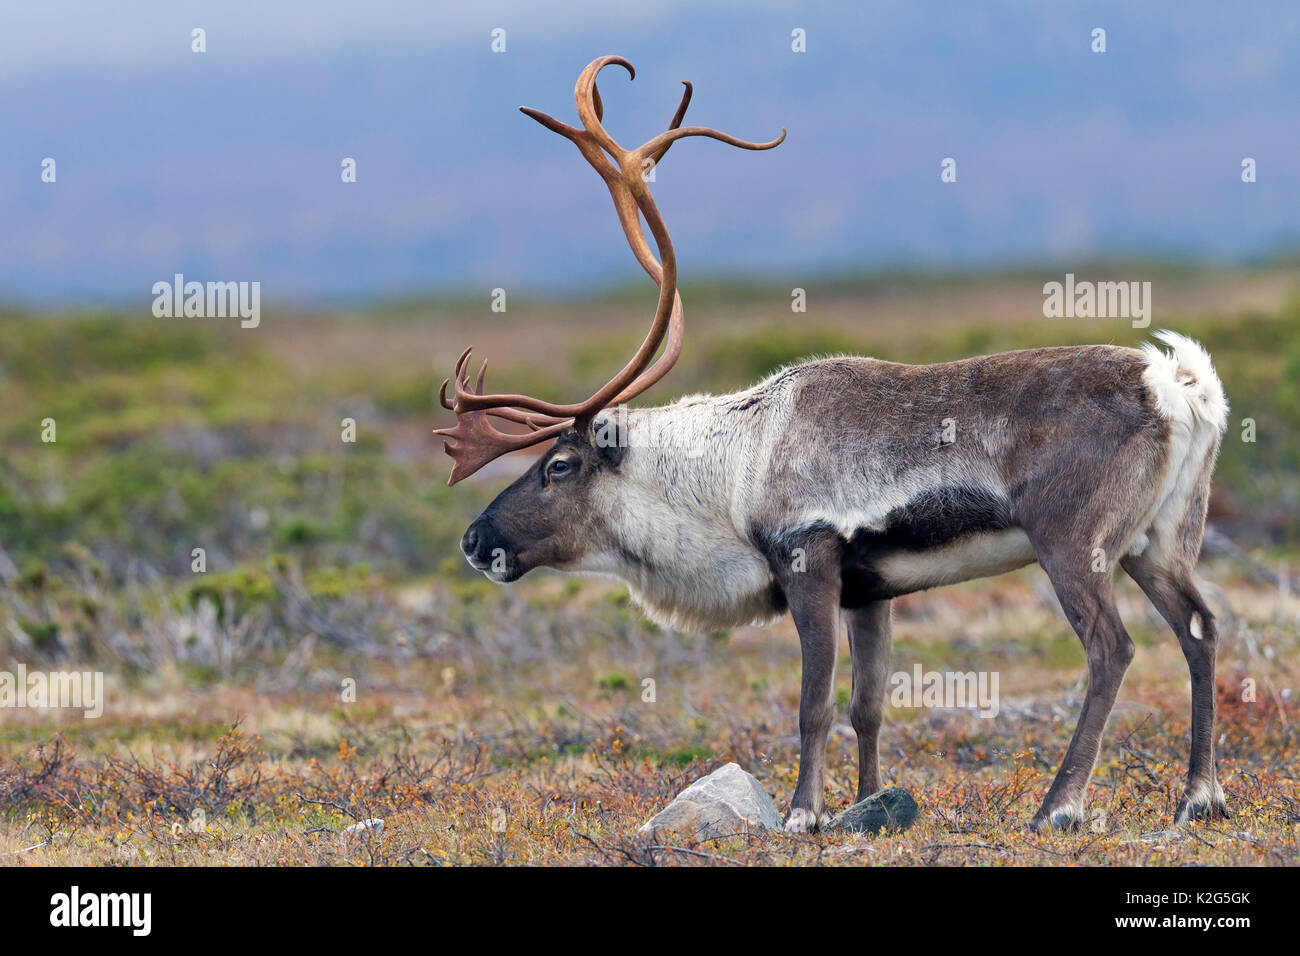 Le renne (Rangifer tarandus), homme de la toundra. La Suède Banque D'Images